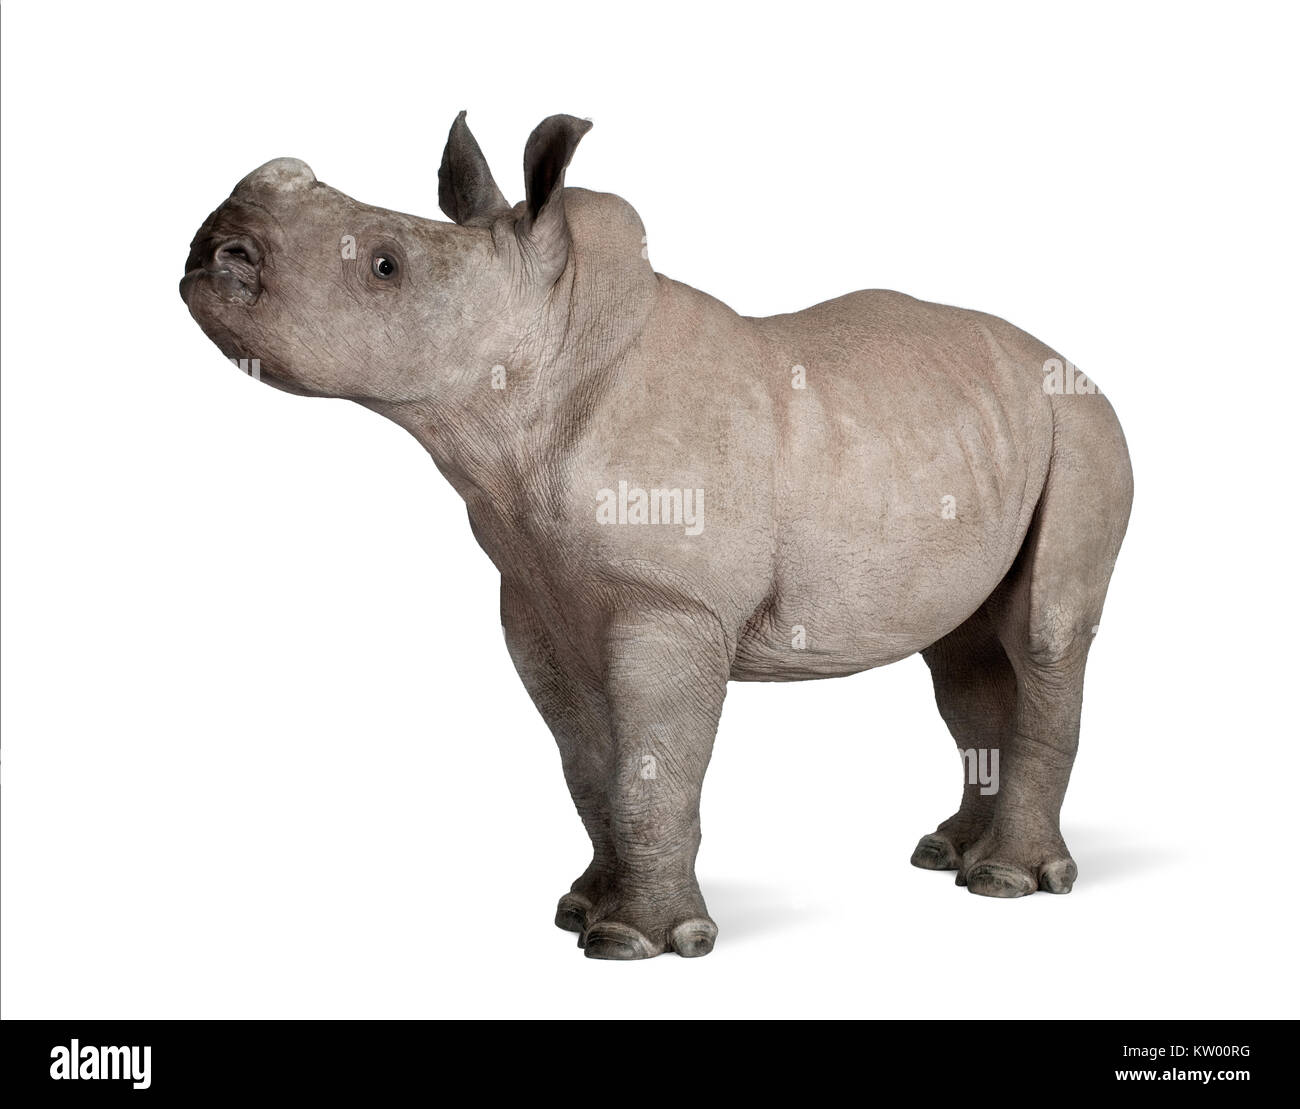 Giovani rinoceronte bianco o piazza a labbro - rinoceronte Ceratotherium simum (2 mesi) davanti a uno sfondo bianco Foto Stock